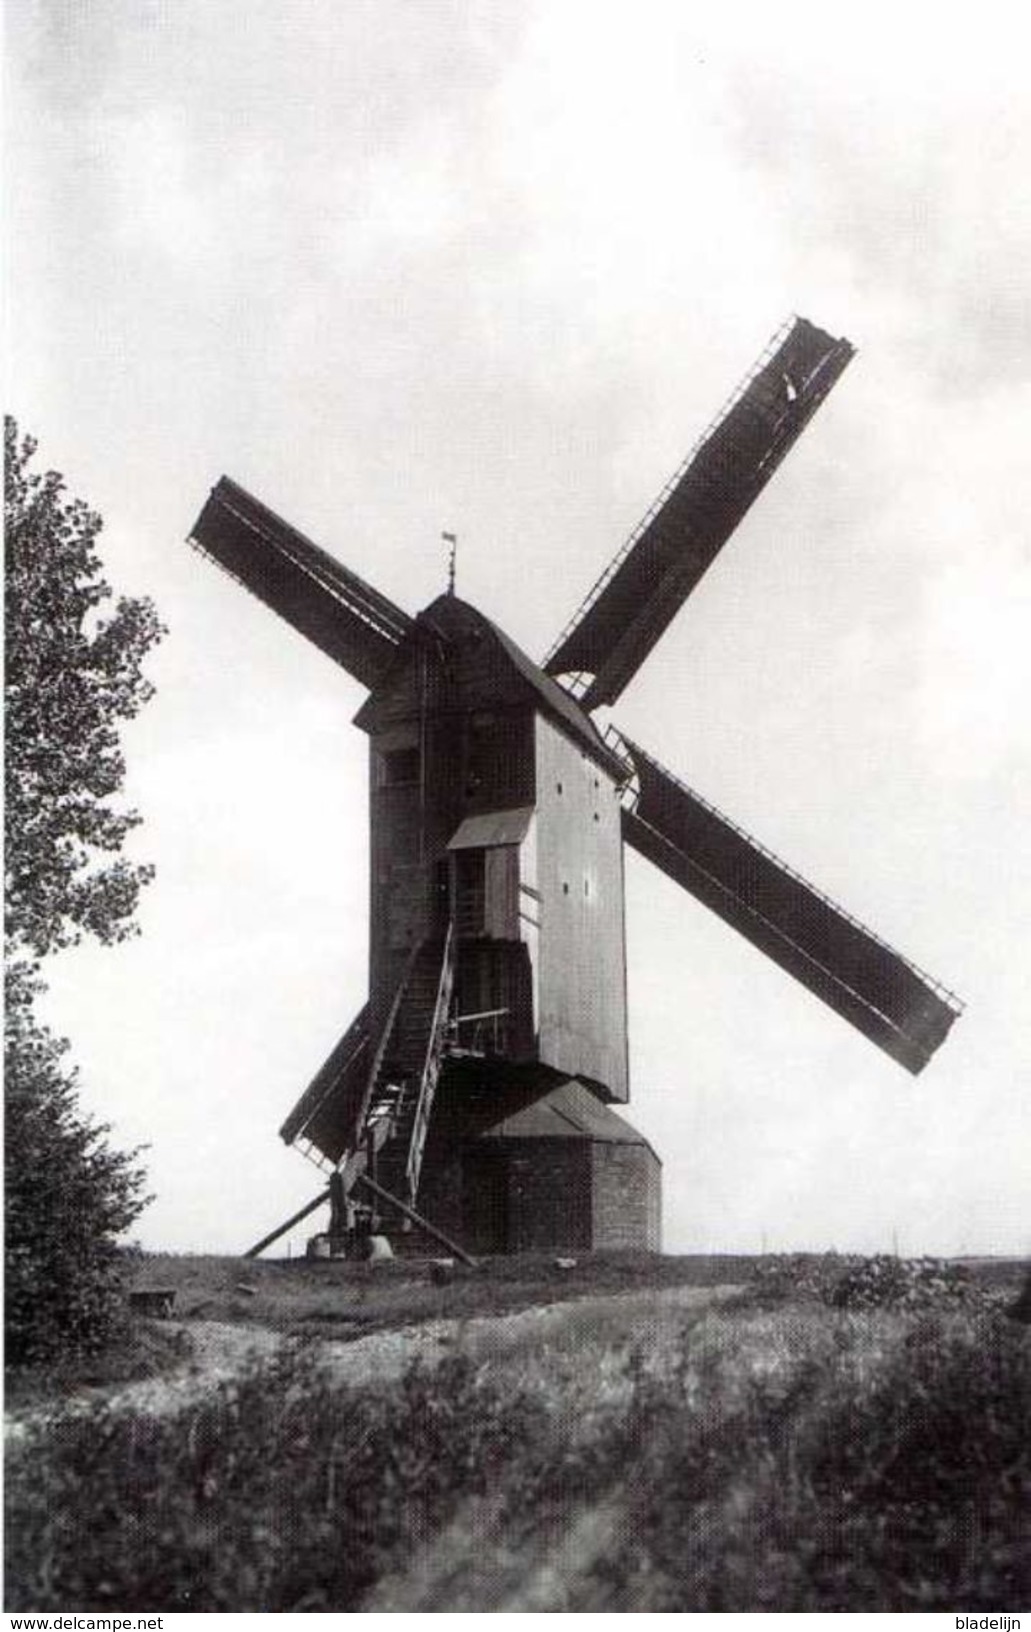 GELUVELD - Zonnebeke (W.Vl.) - Molen/moulin - Fraaie Opname Van De Verdwenen Motebosmolen Of Cichoreimolen In Werking - Zonnebeke